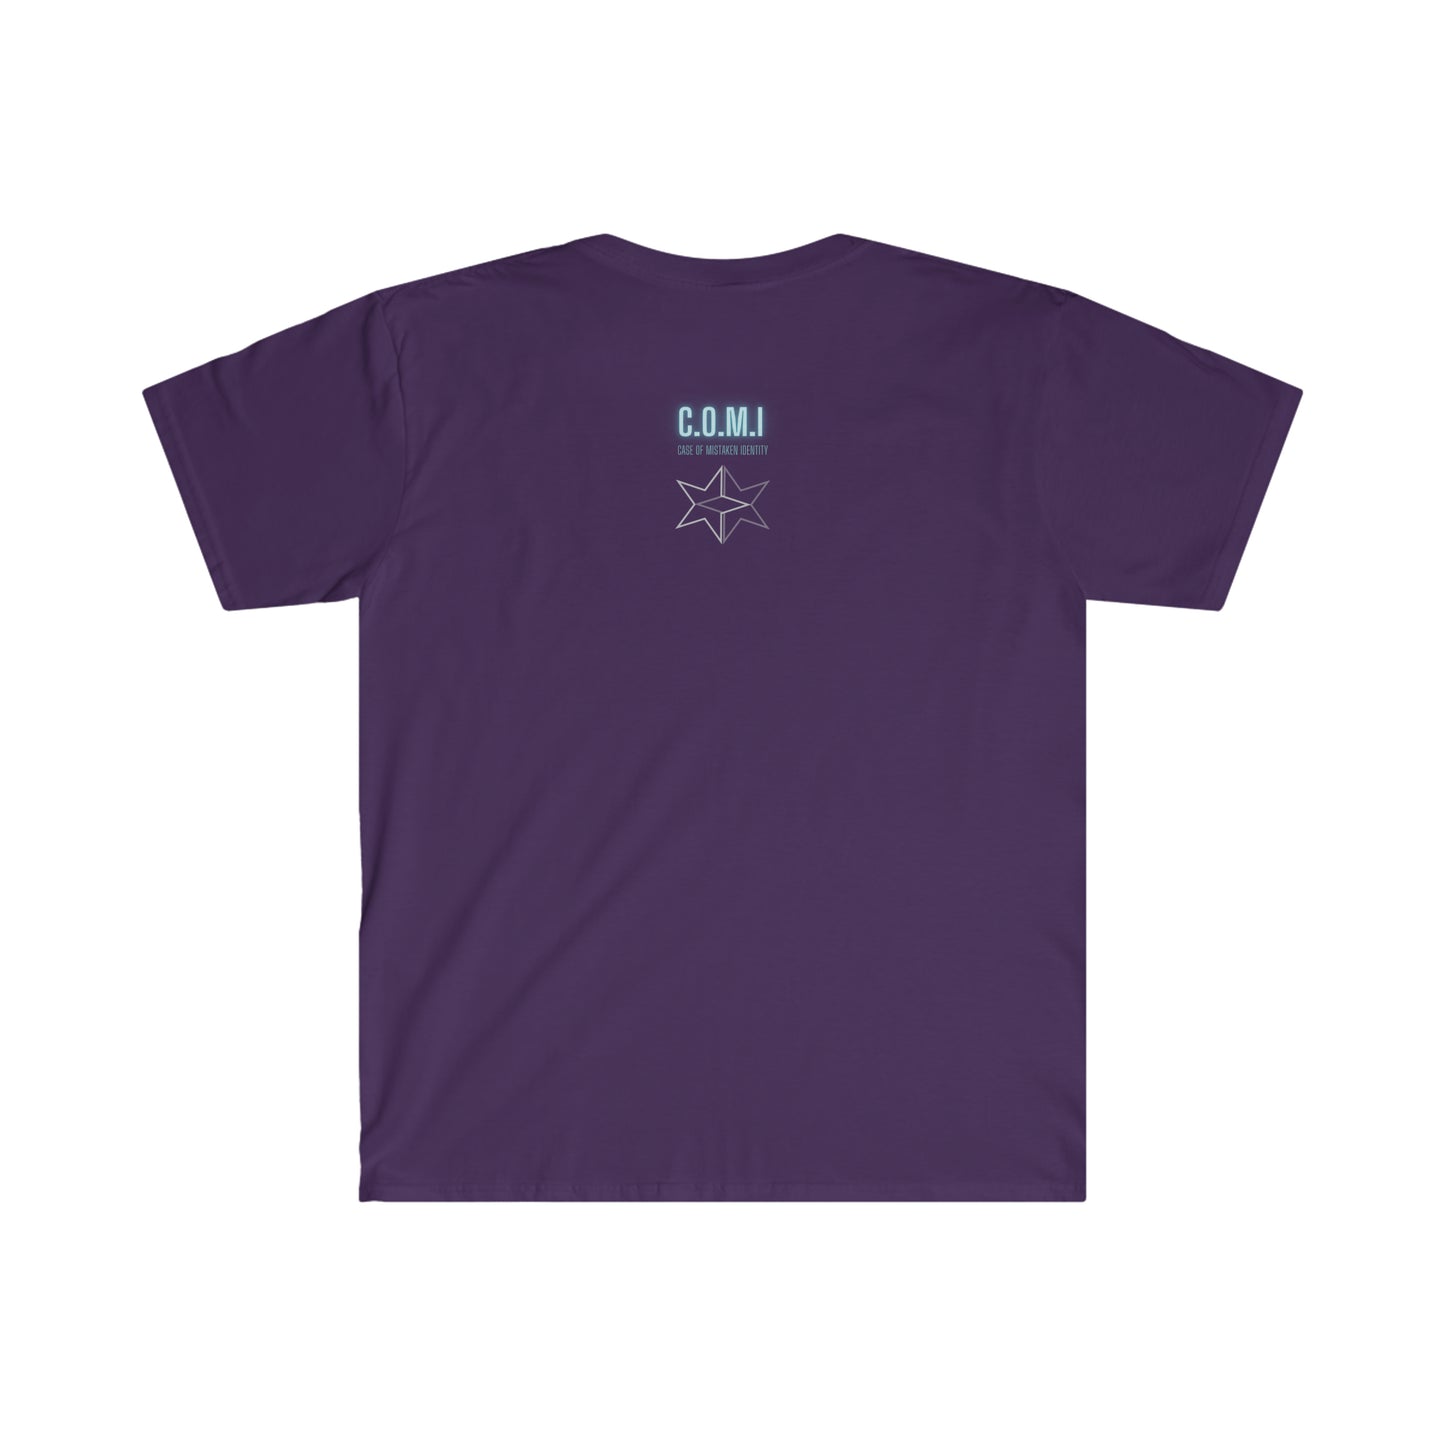 E30 M3 Cyberpunk - Unisex Softstyle T-Shirt